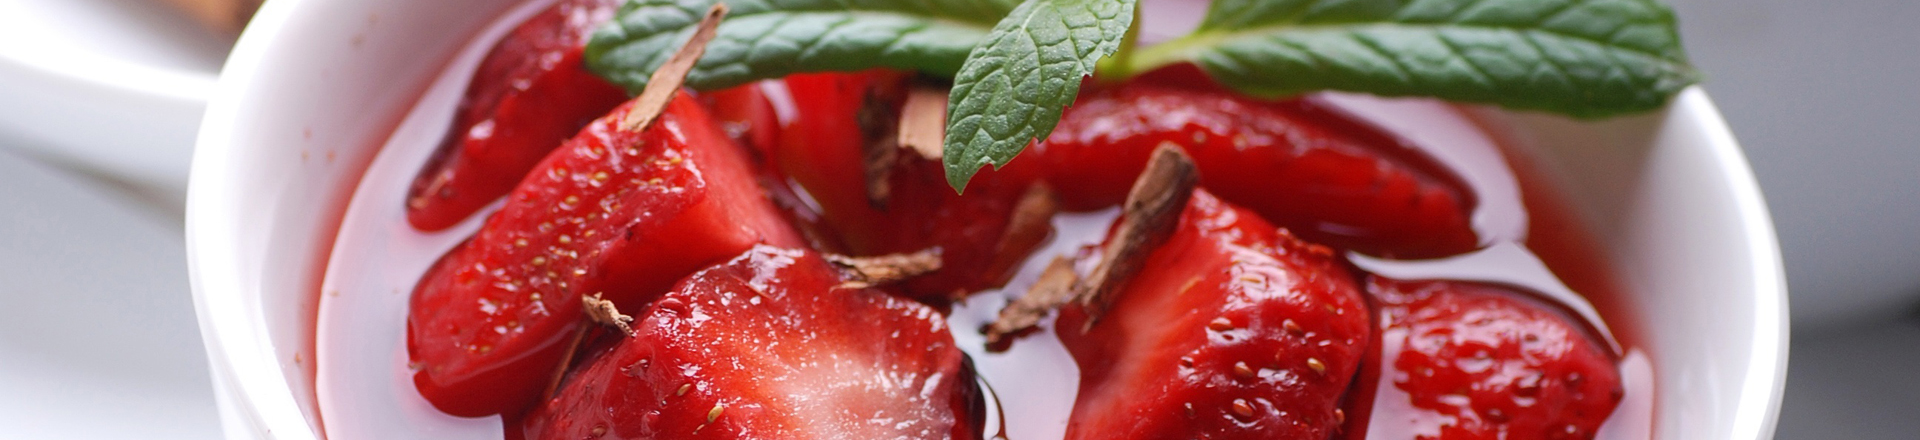 Strawberry-Kiwi Soup